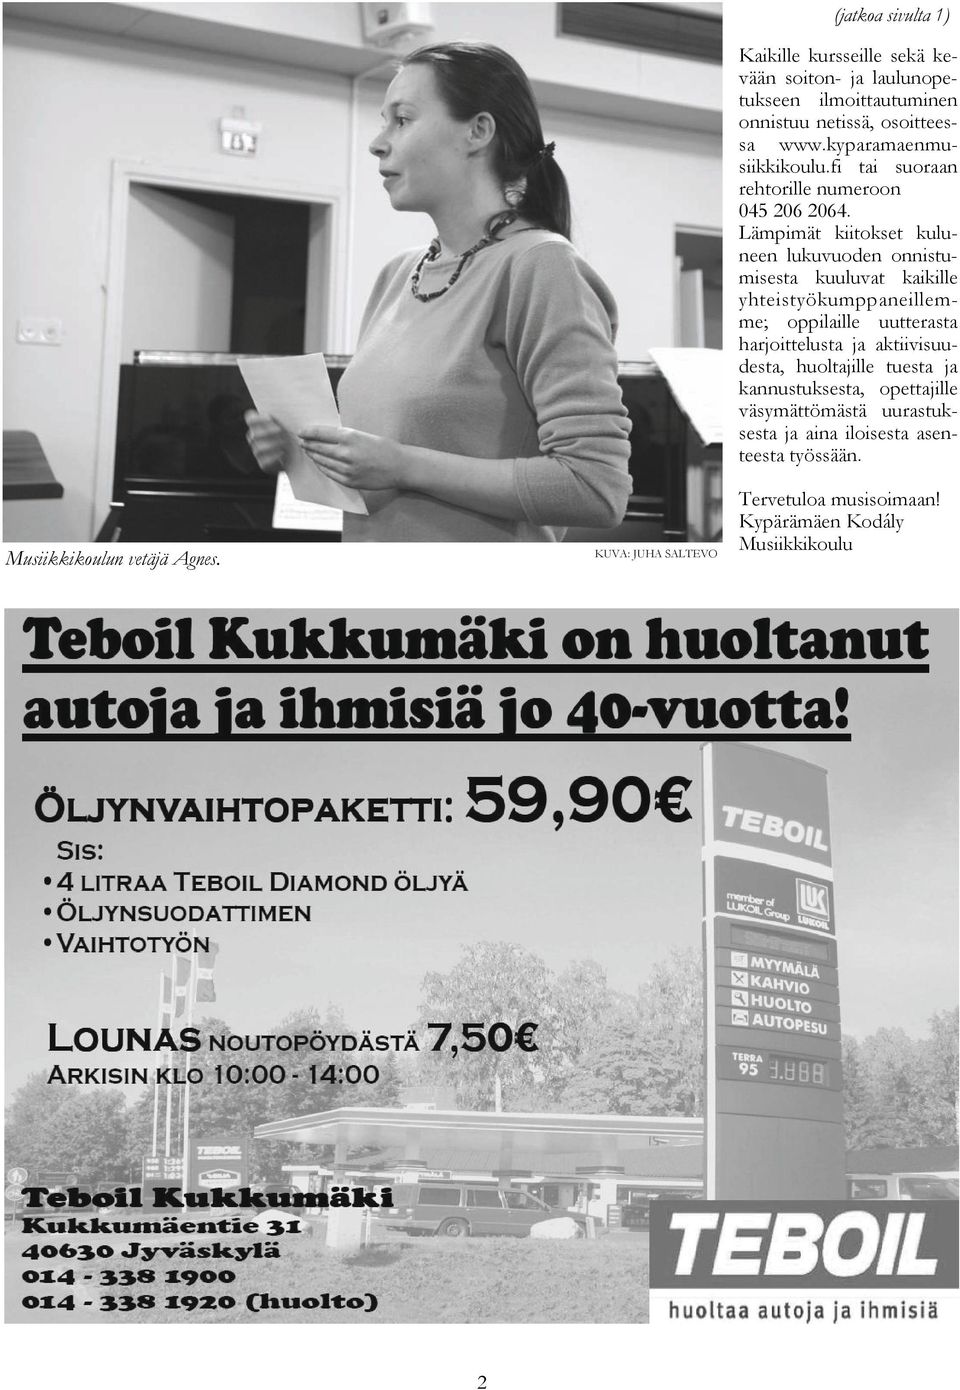 www.kyparamaenmusiikkikoulu.fi tai suoraan rehtorille numeroon 045 206 2064.